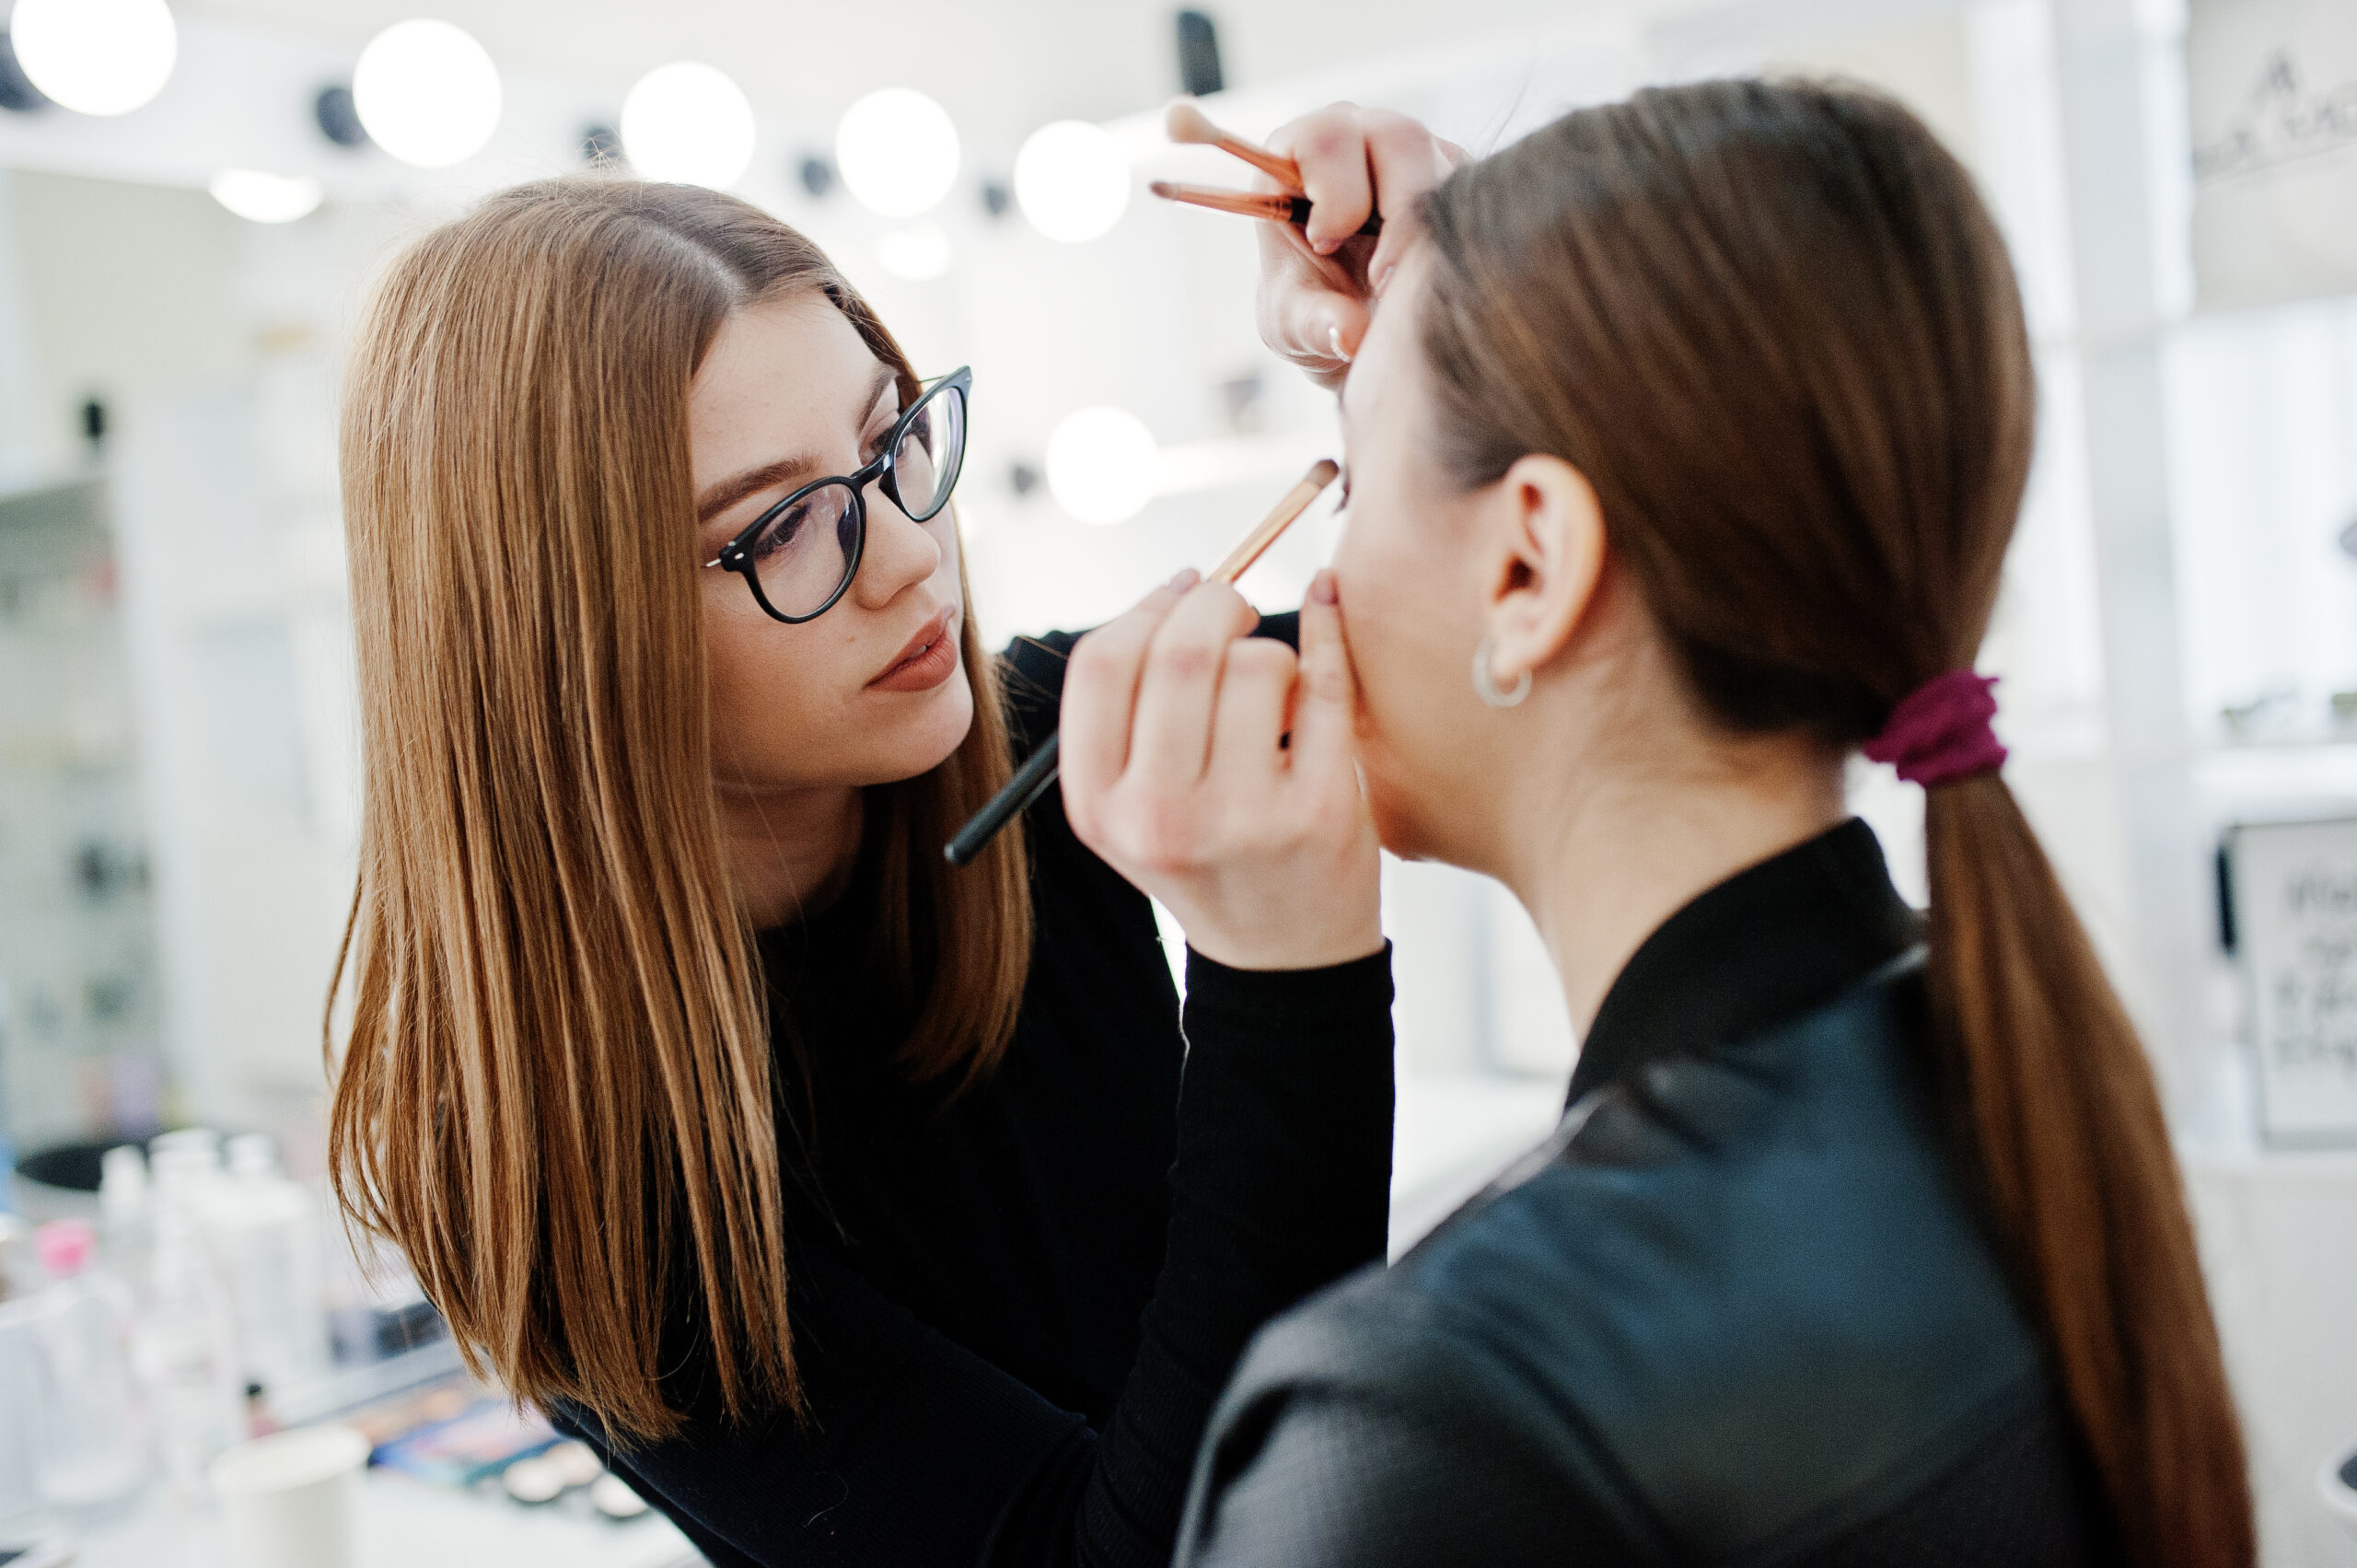 makeup artist applying makeup to woman